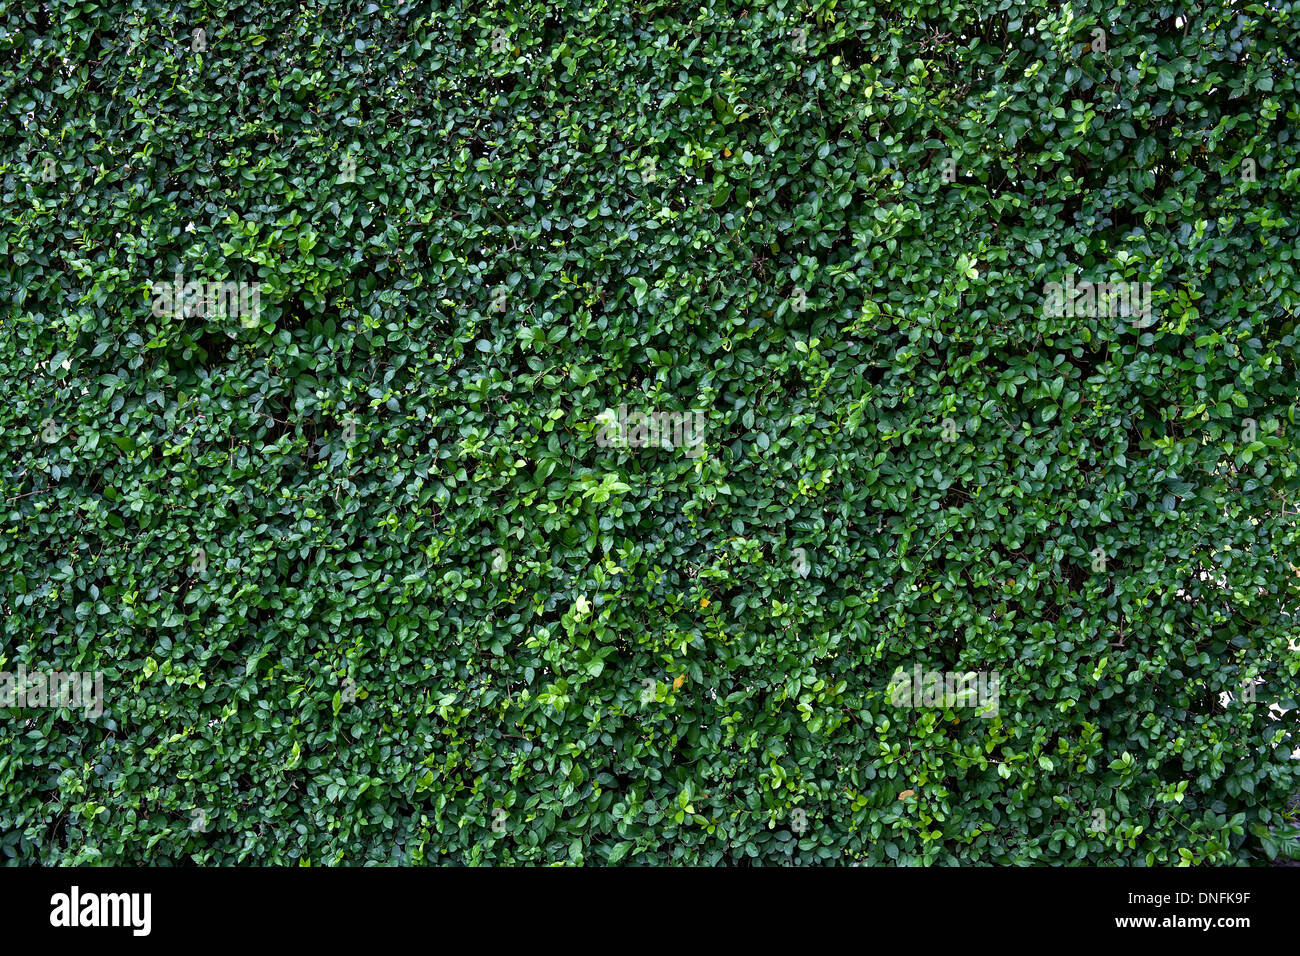 Feuille verte naturelle mur, eco friendly background Banque D'Images